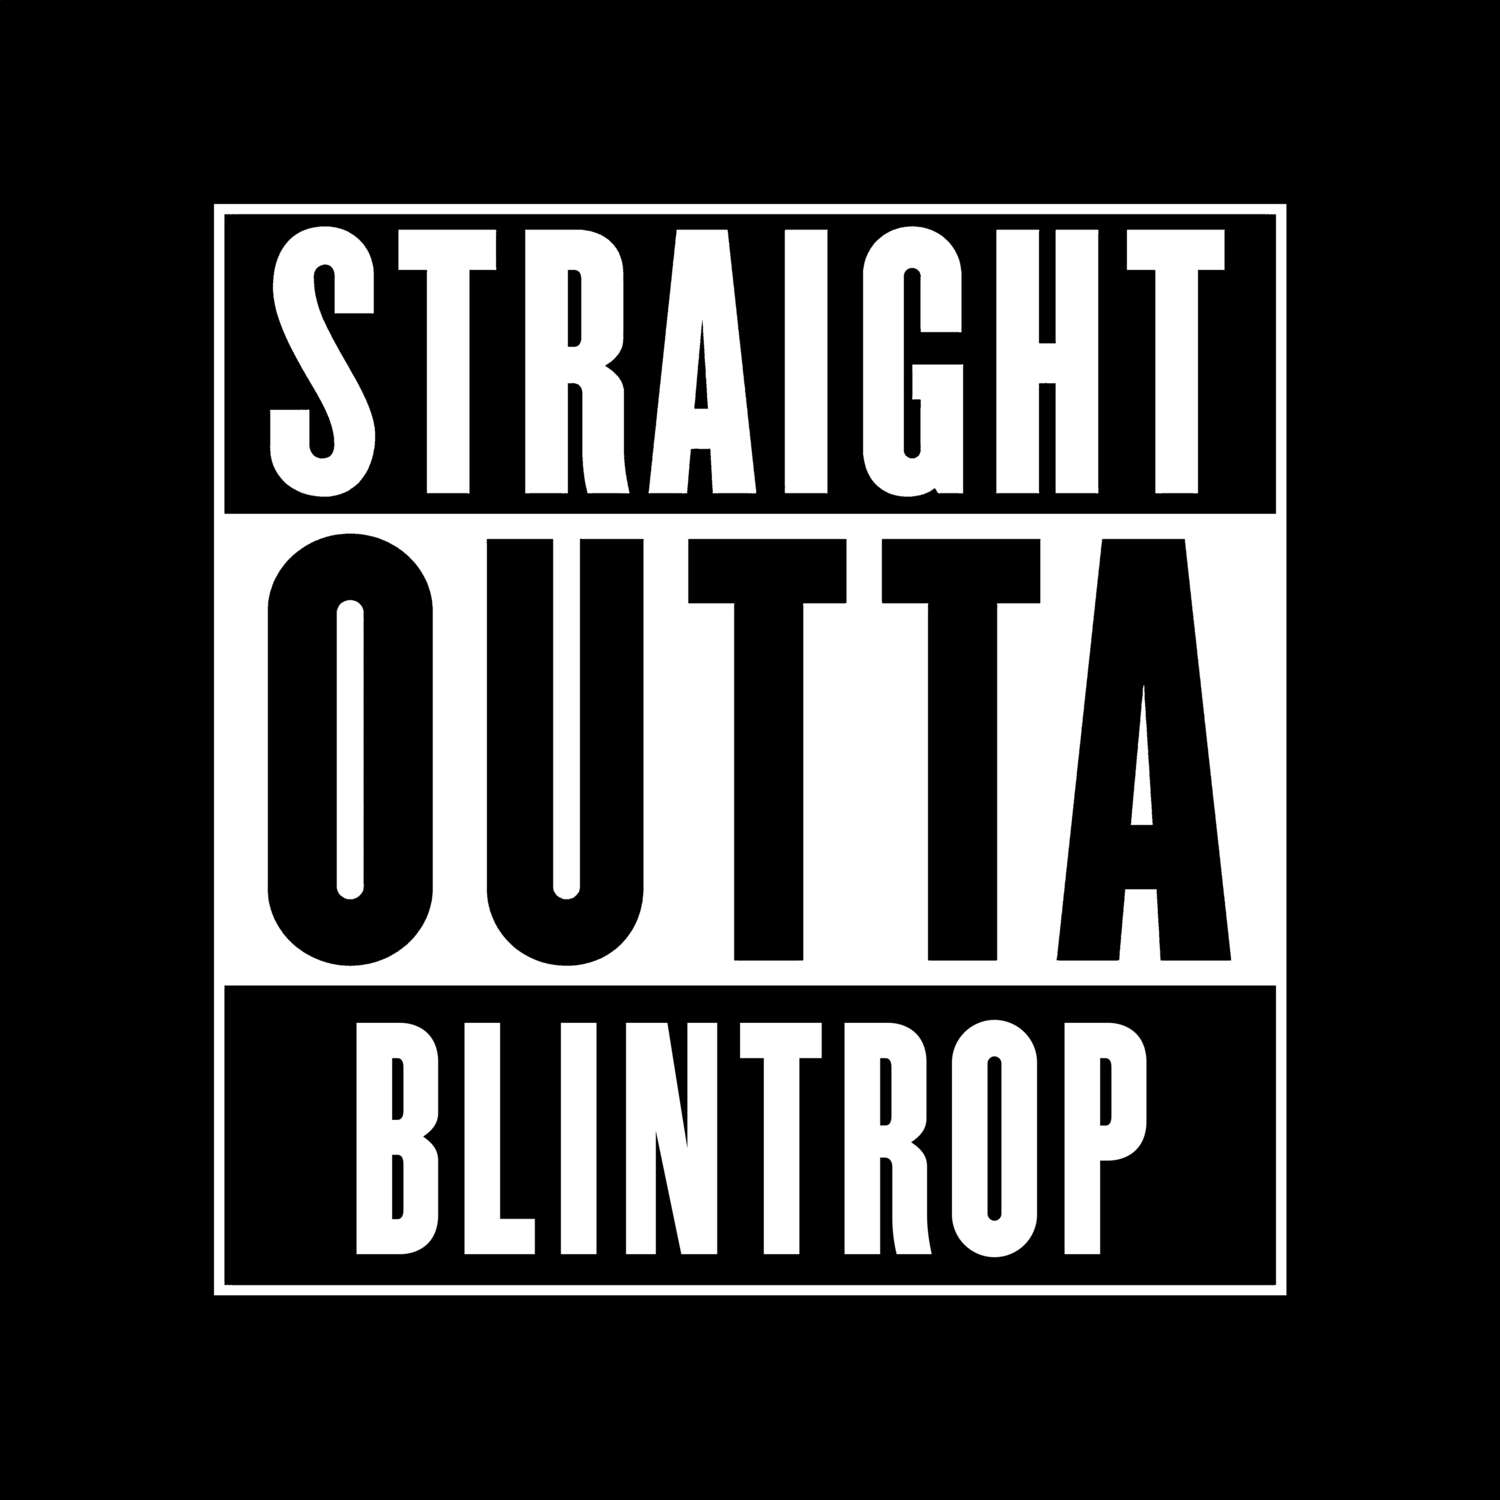 Blintrop T-Shirt »Straight Outta«